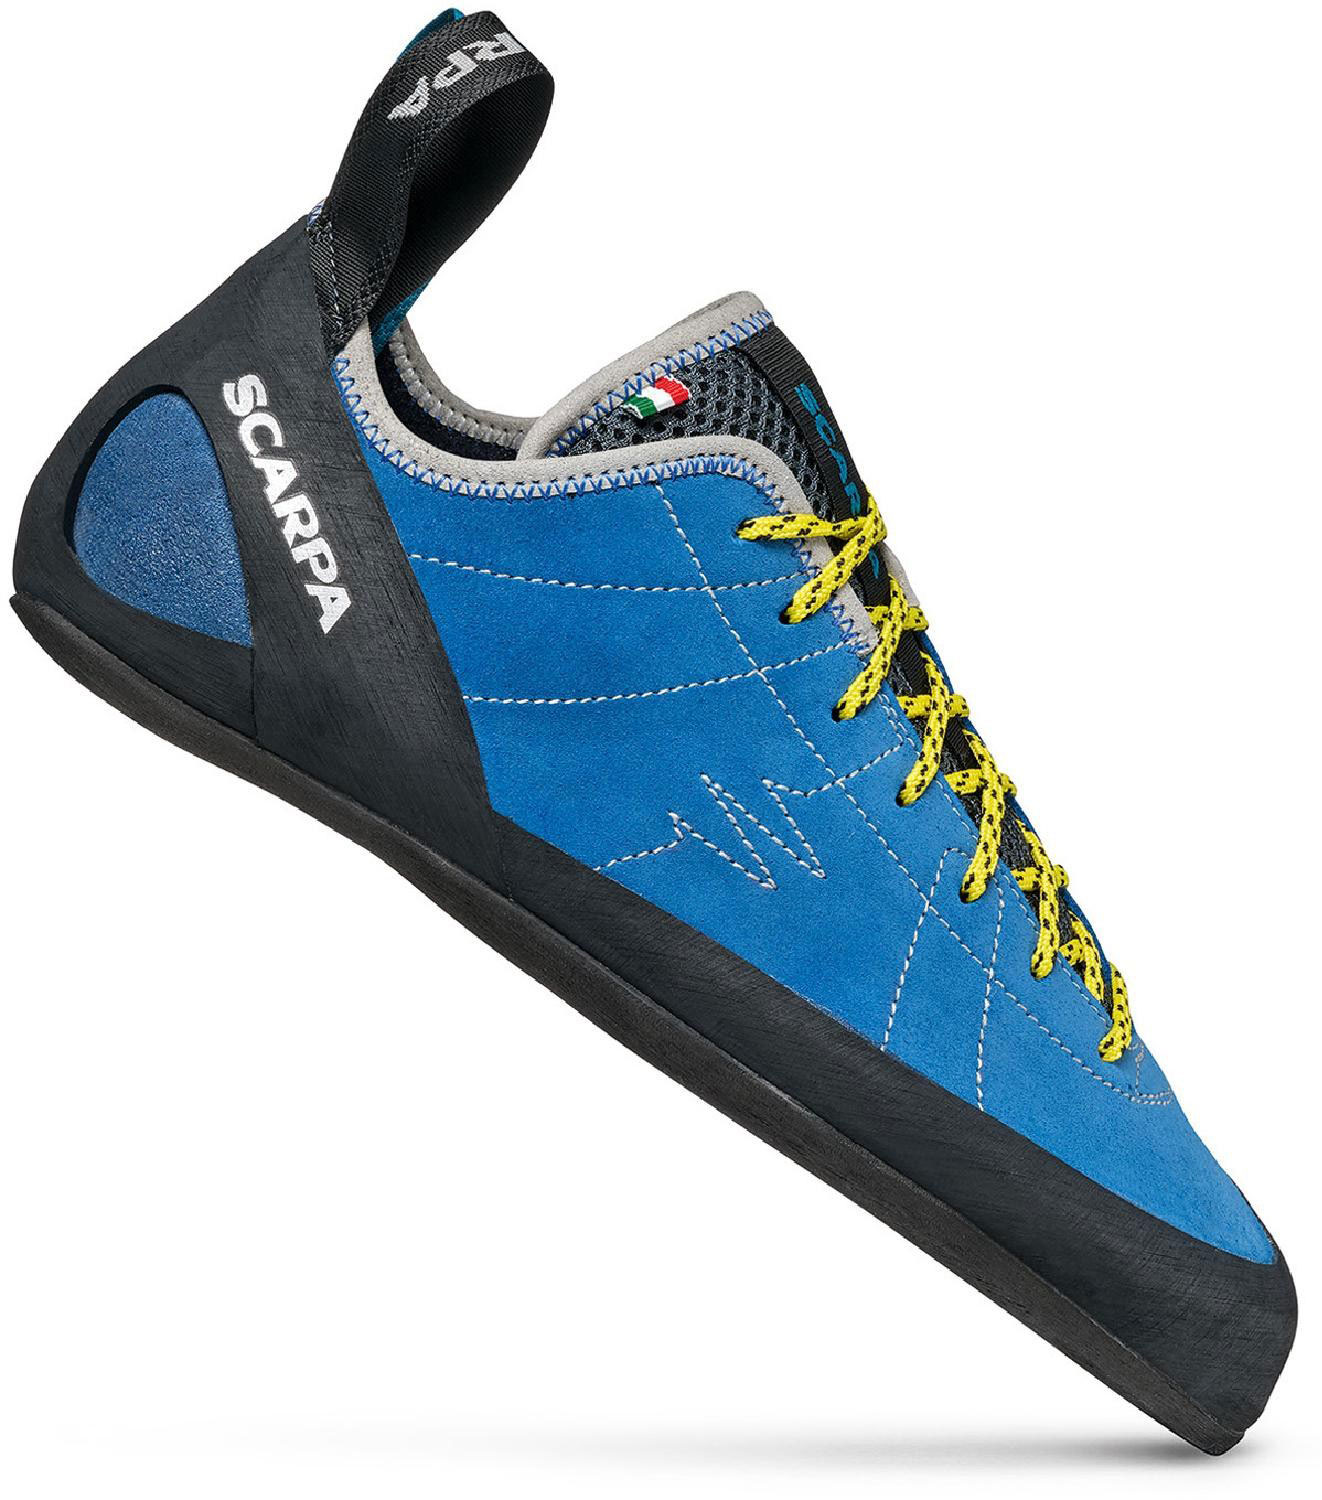 Scarpa-Helix-rock-climbing-shoes